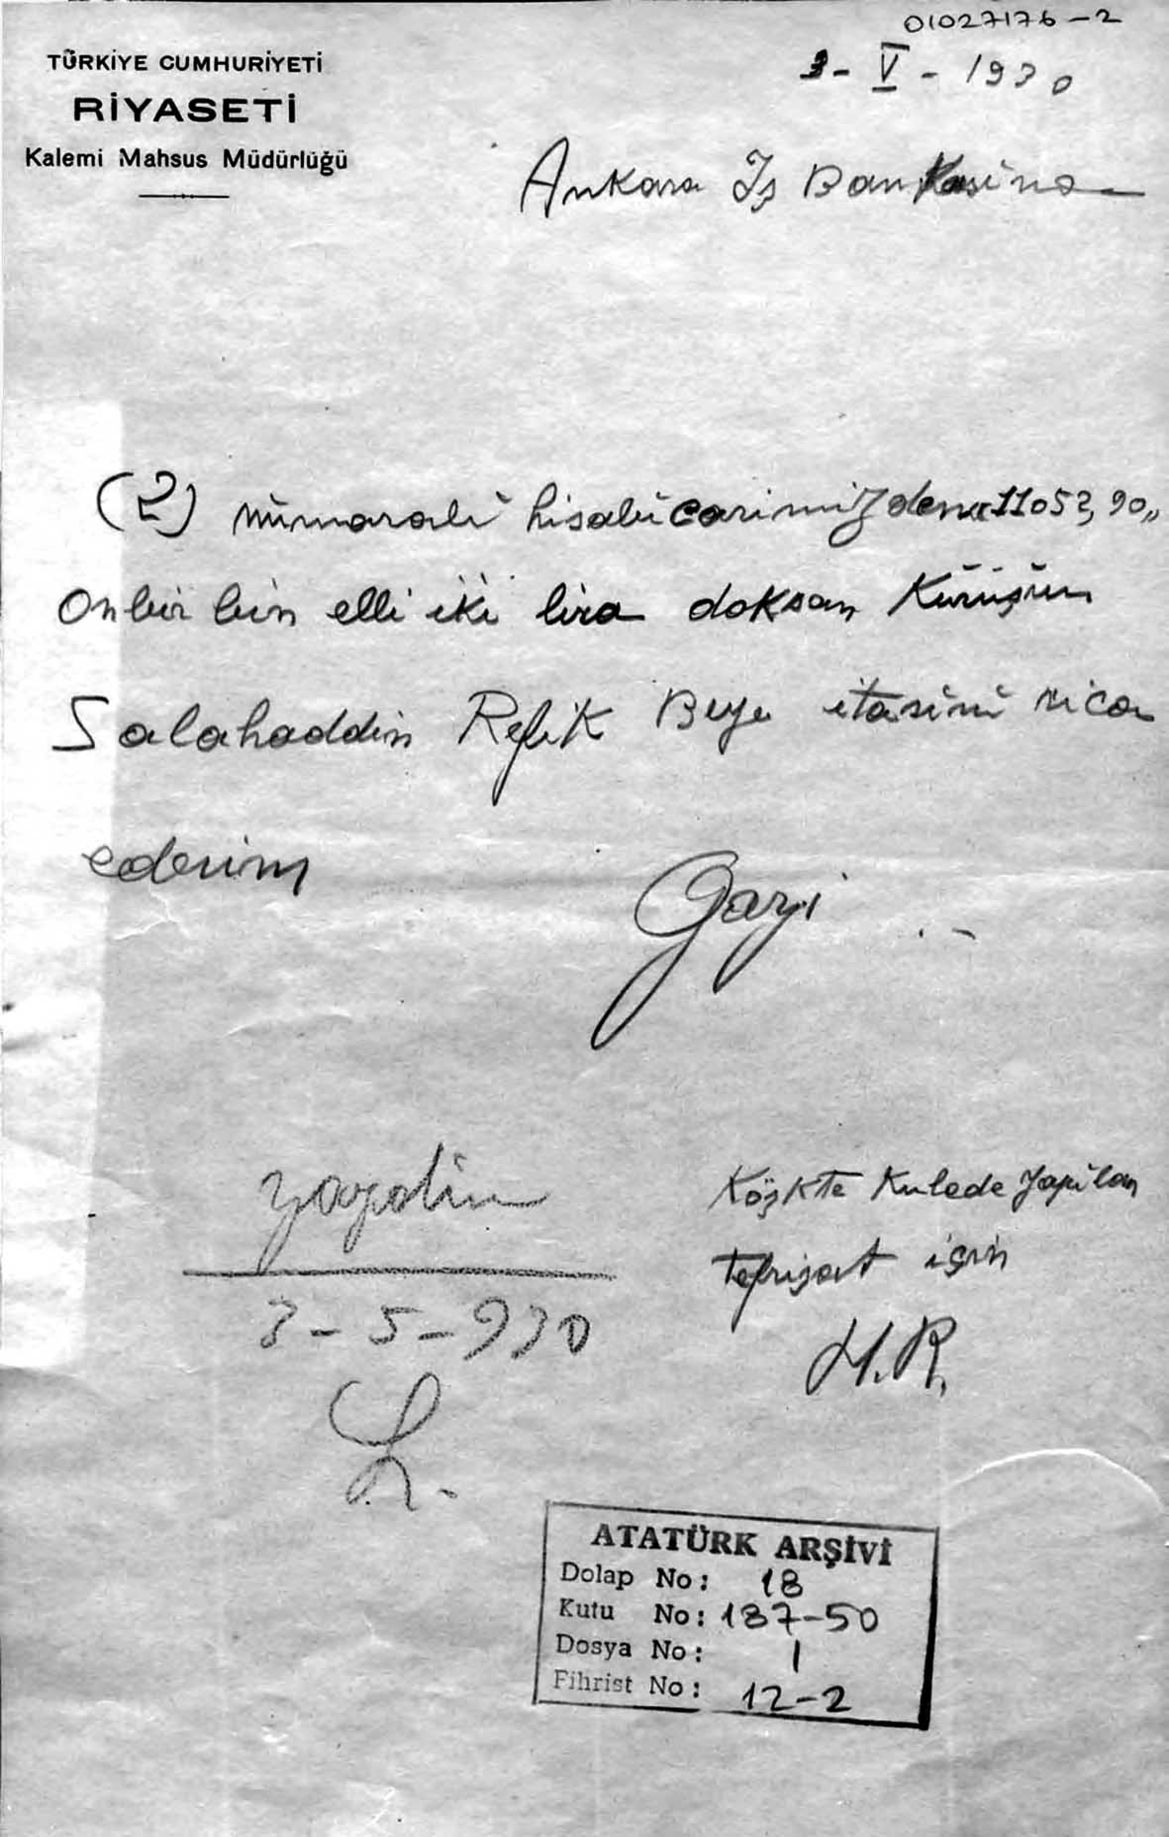 Çankaya’daki yeni mutfak ve yemek odasını yapan Selâhattin Refik Bey için Atatürk’ün ödeme talimatı. Ödeme, Atatürk’ün  özel hesabından yapılmıştır.